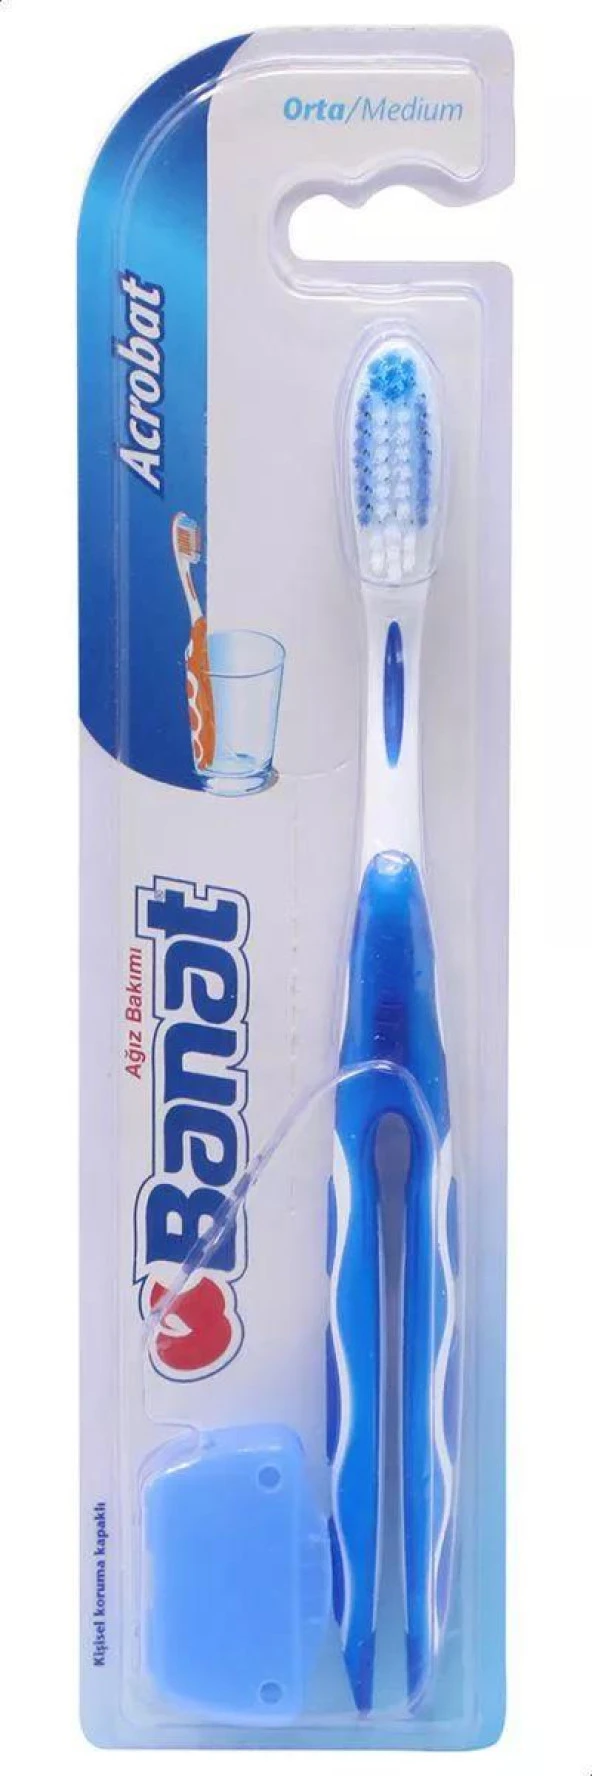 Banat Diş Fırçası Akrobat Orta Sert  ( kapaklı ) Bardağa takılabilen, kokulu, kauçuk saplı